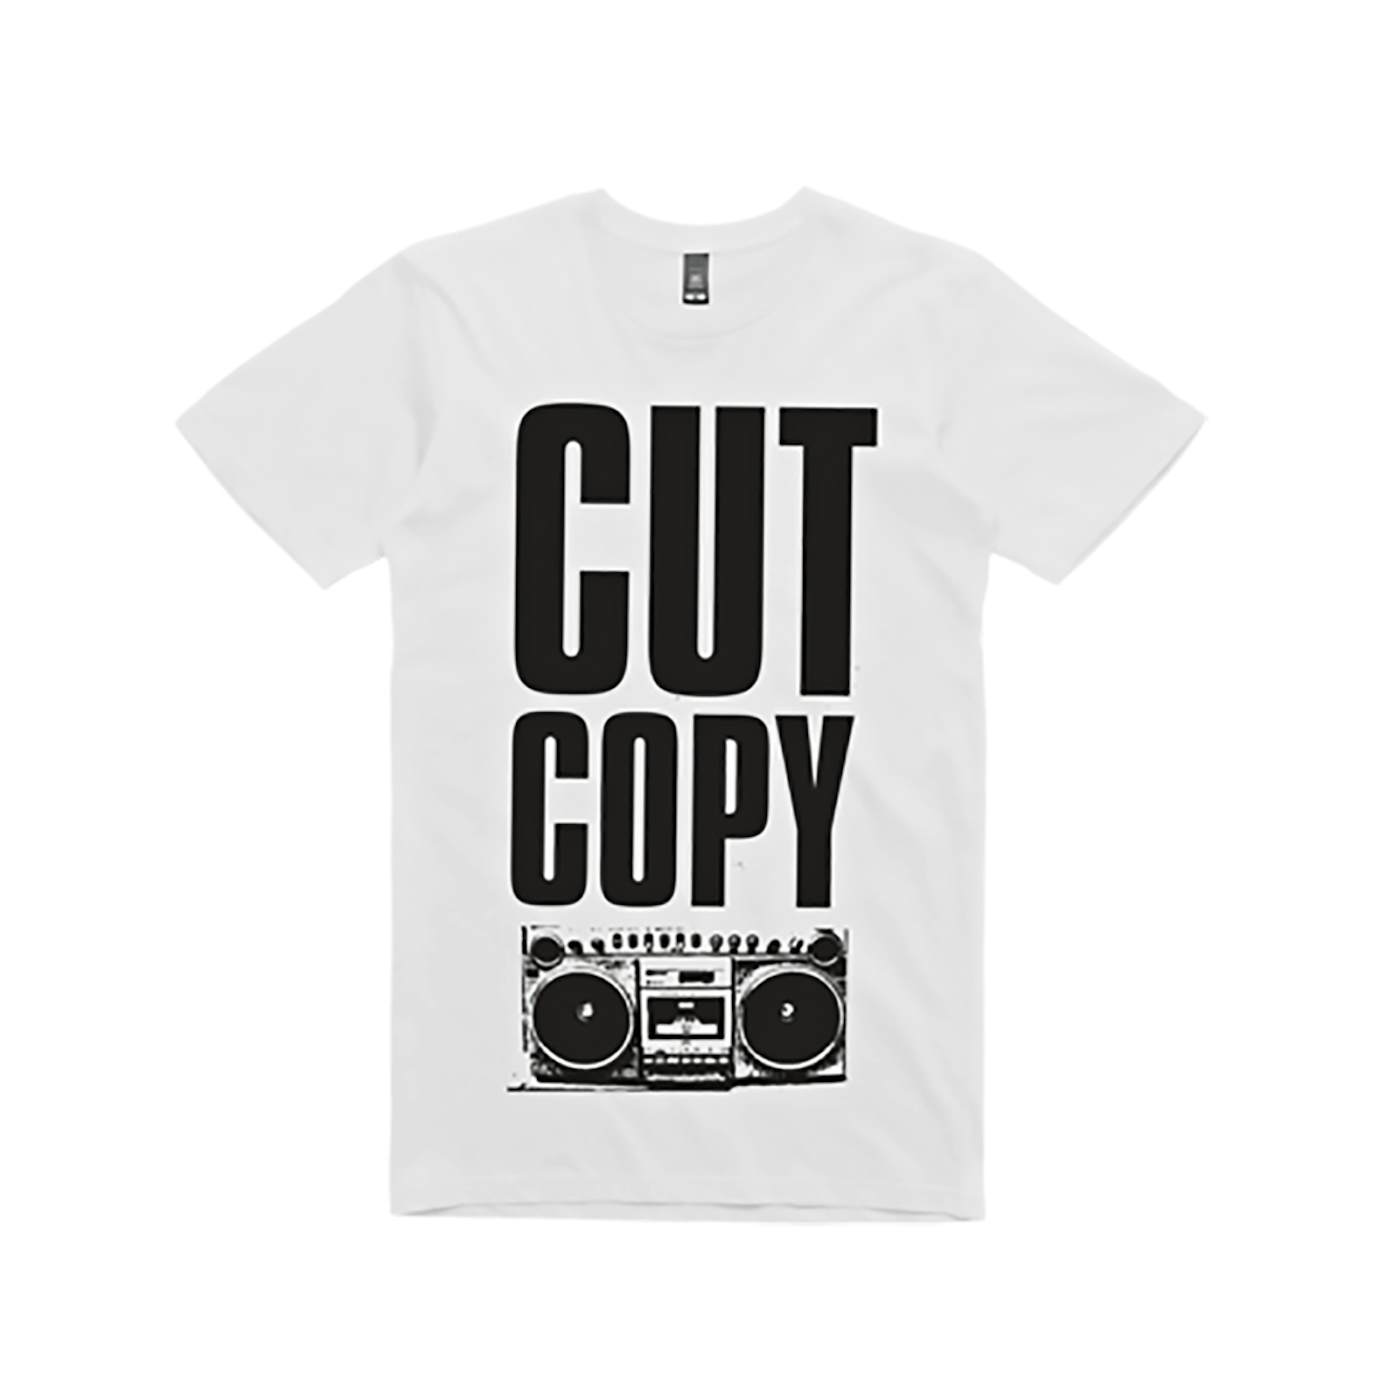 Cut Copy Boom Box T-Shirt - White